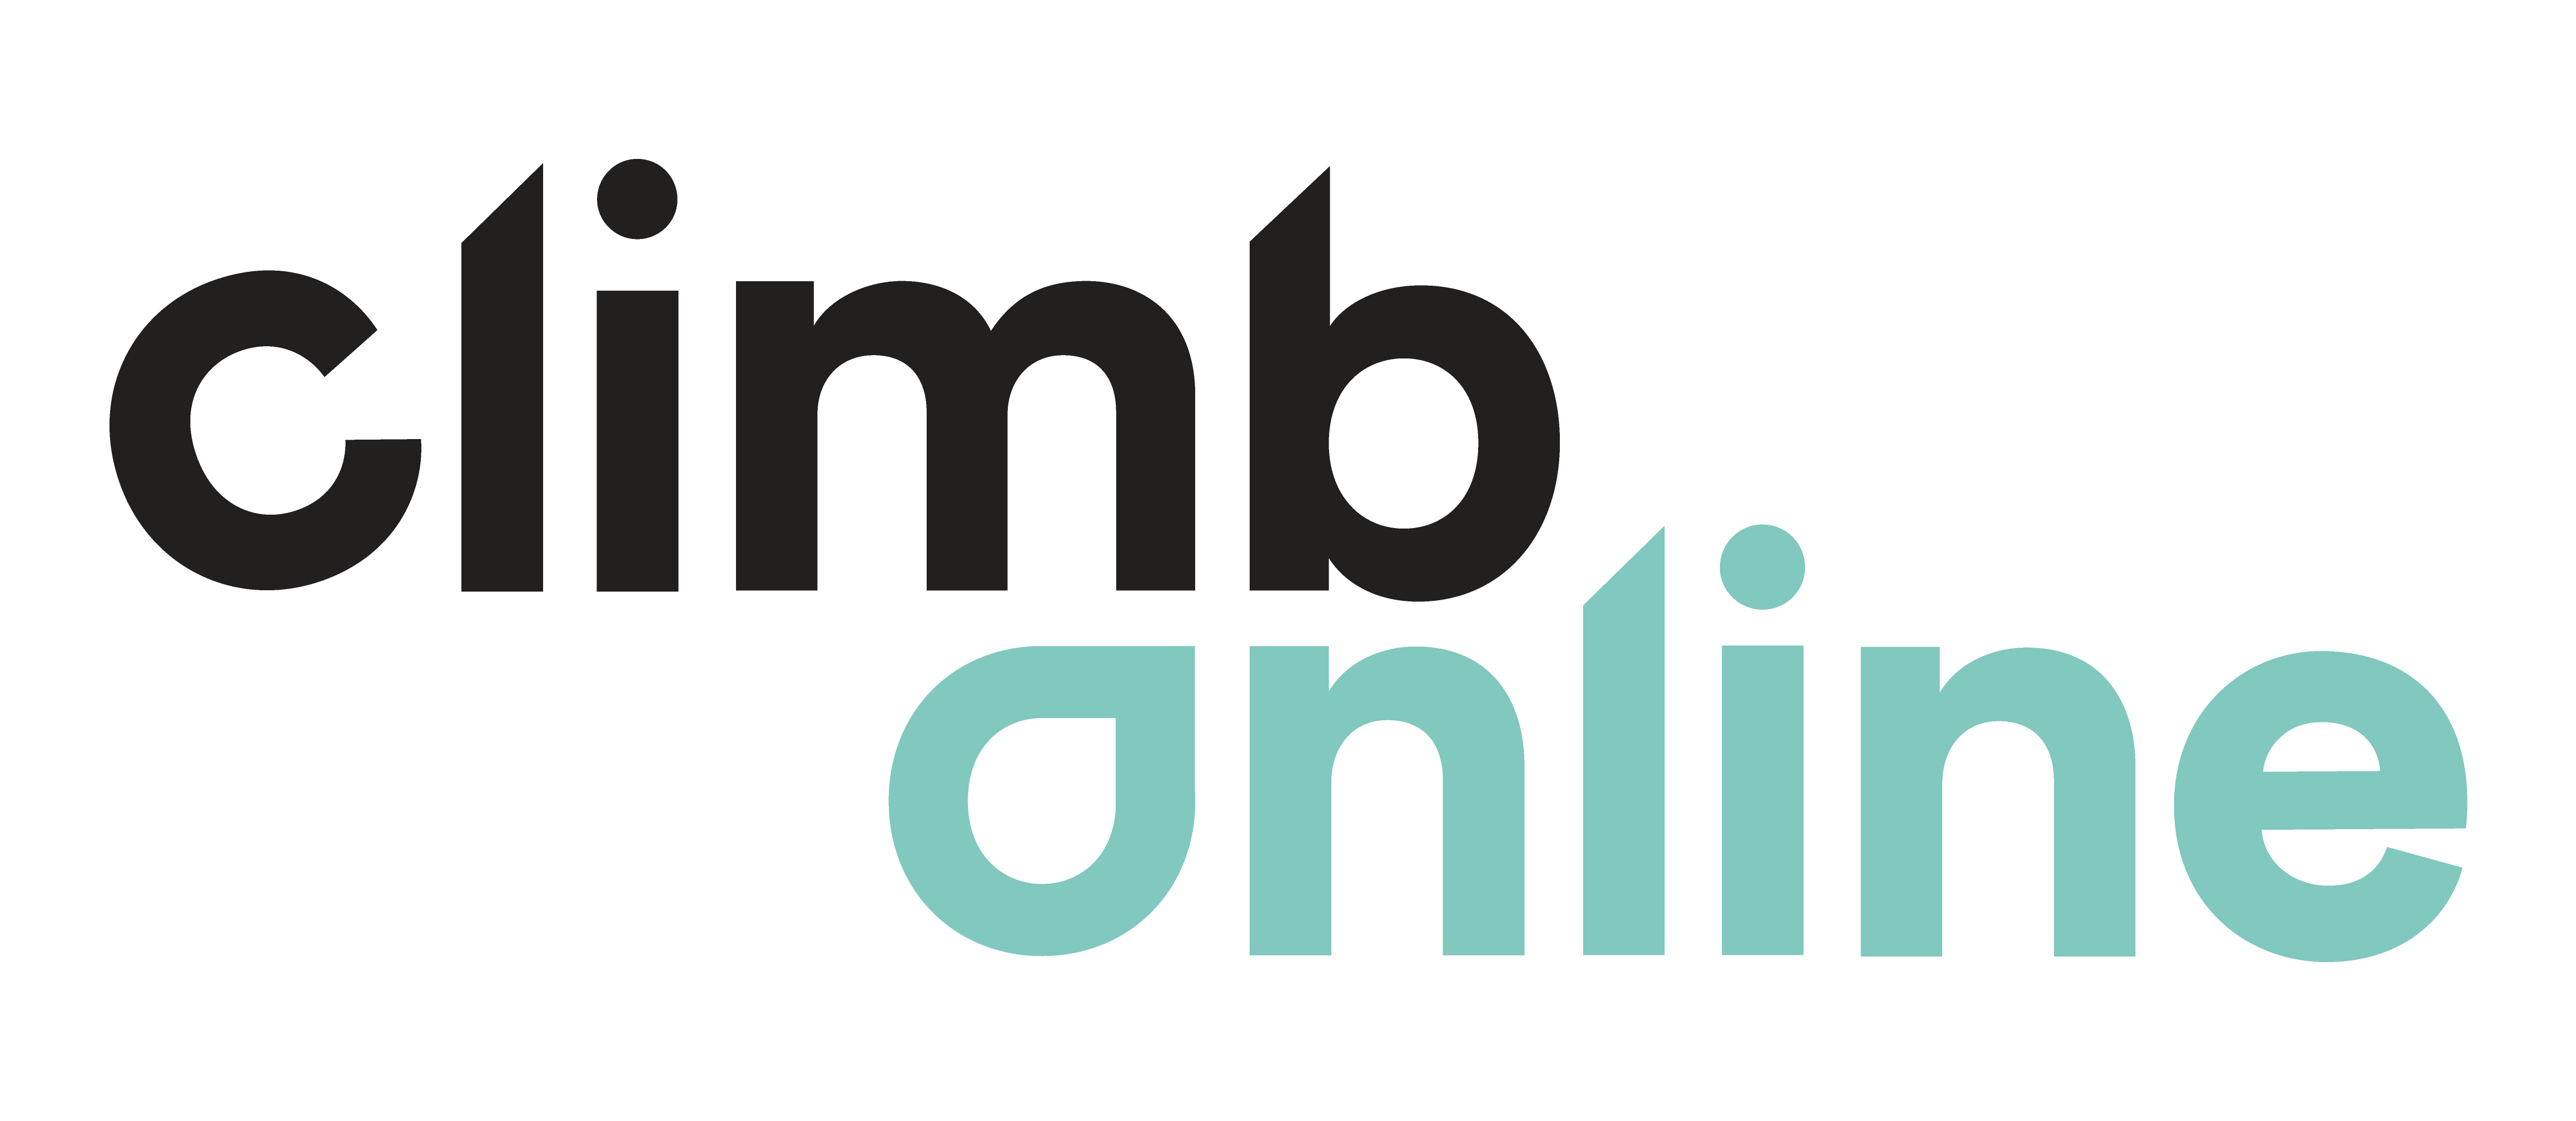 Climb-Online-Logo-Colour-HR.png